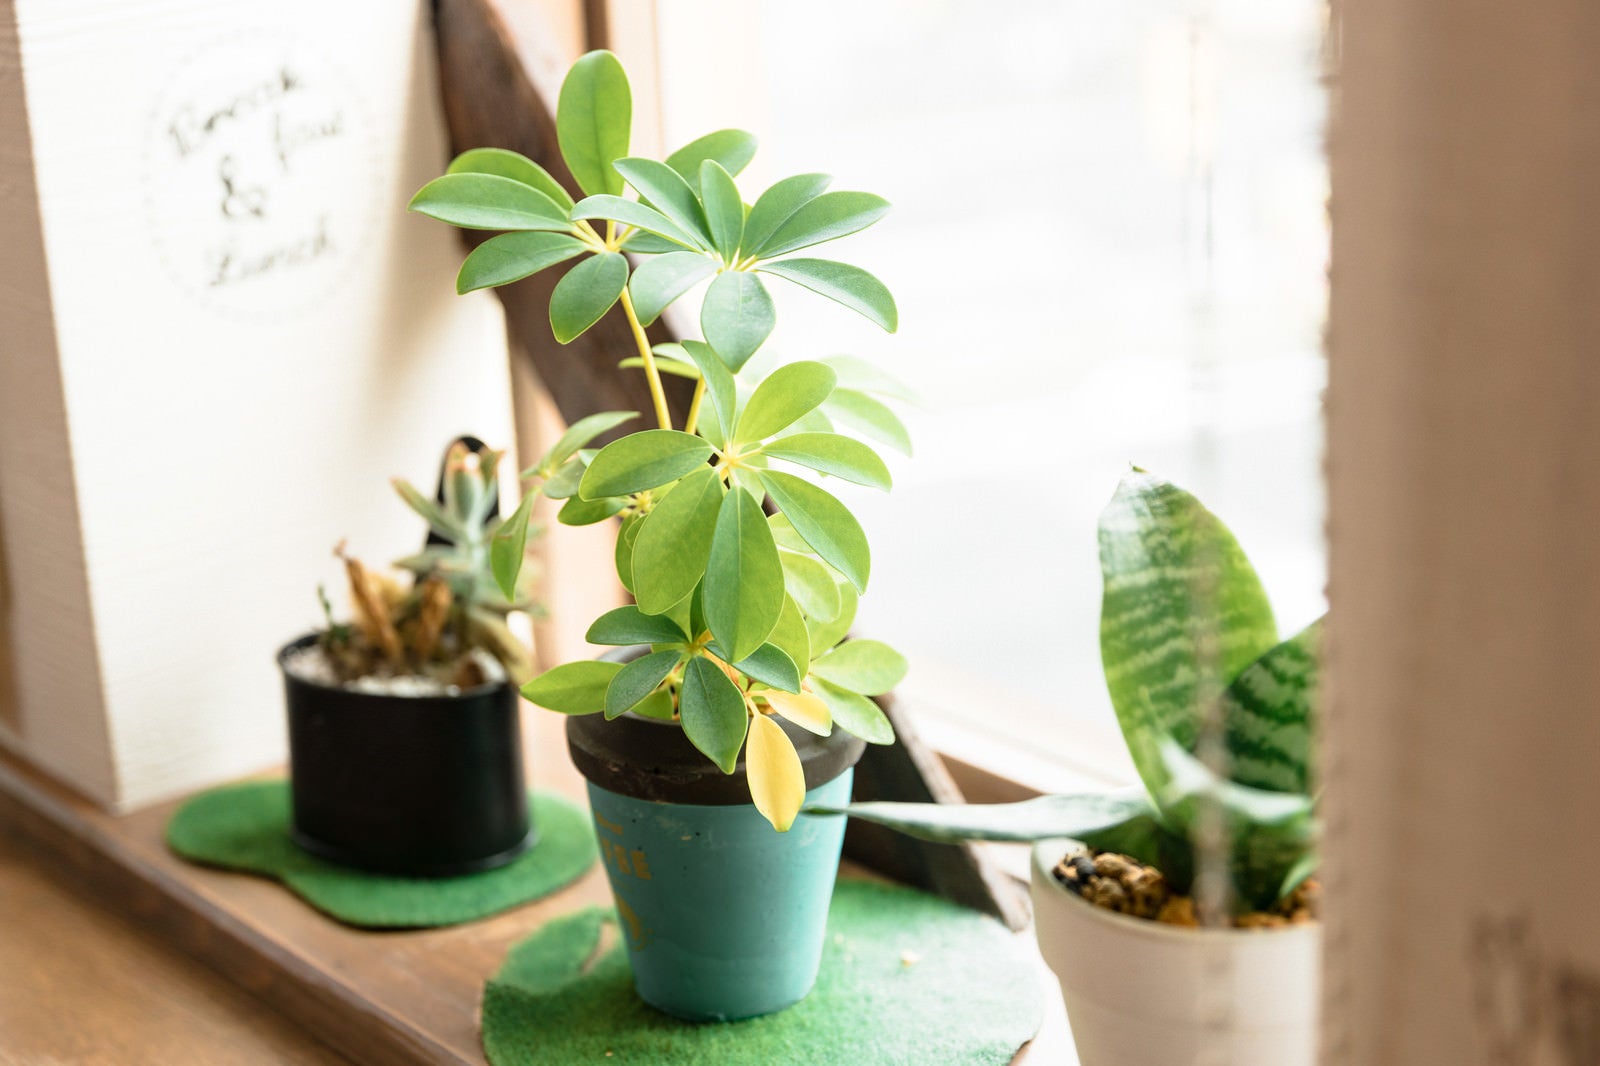 「カフェの窓辺の観葉植物」の写真